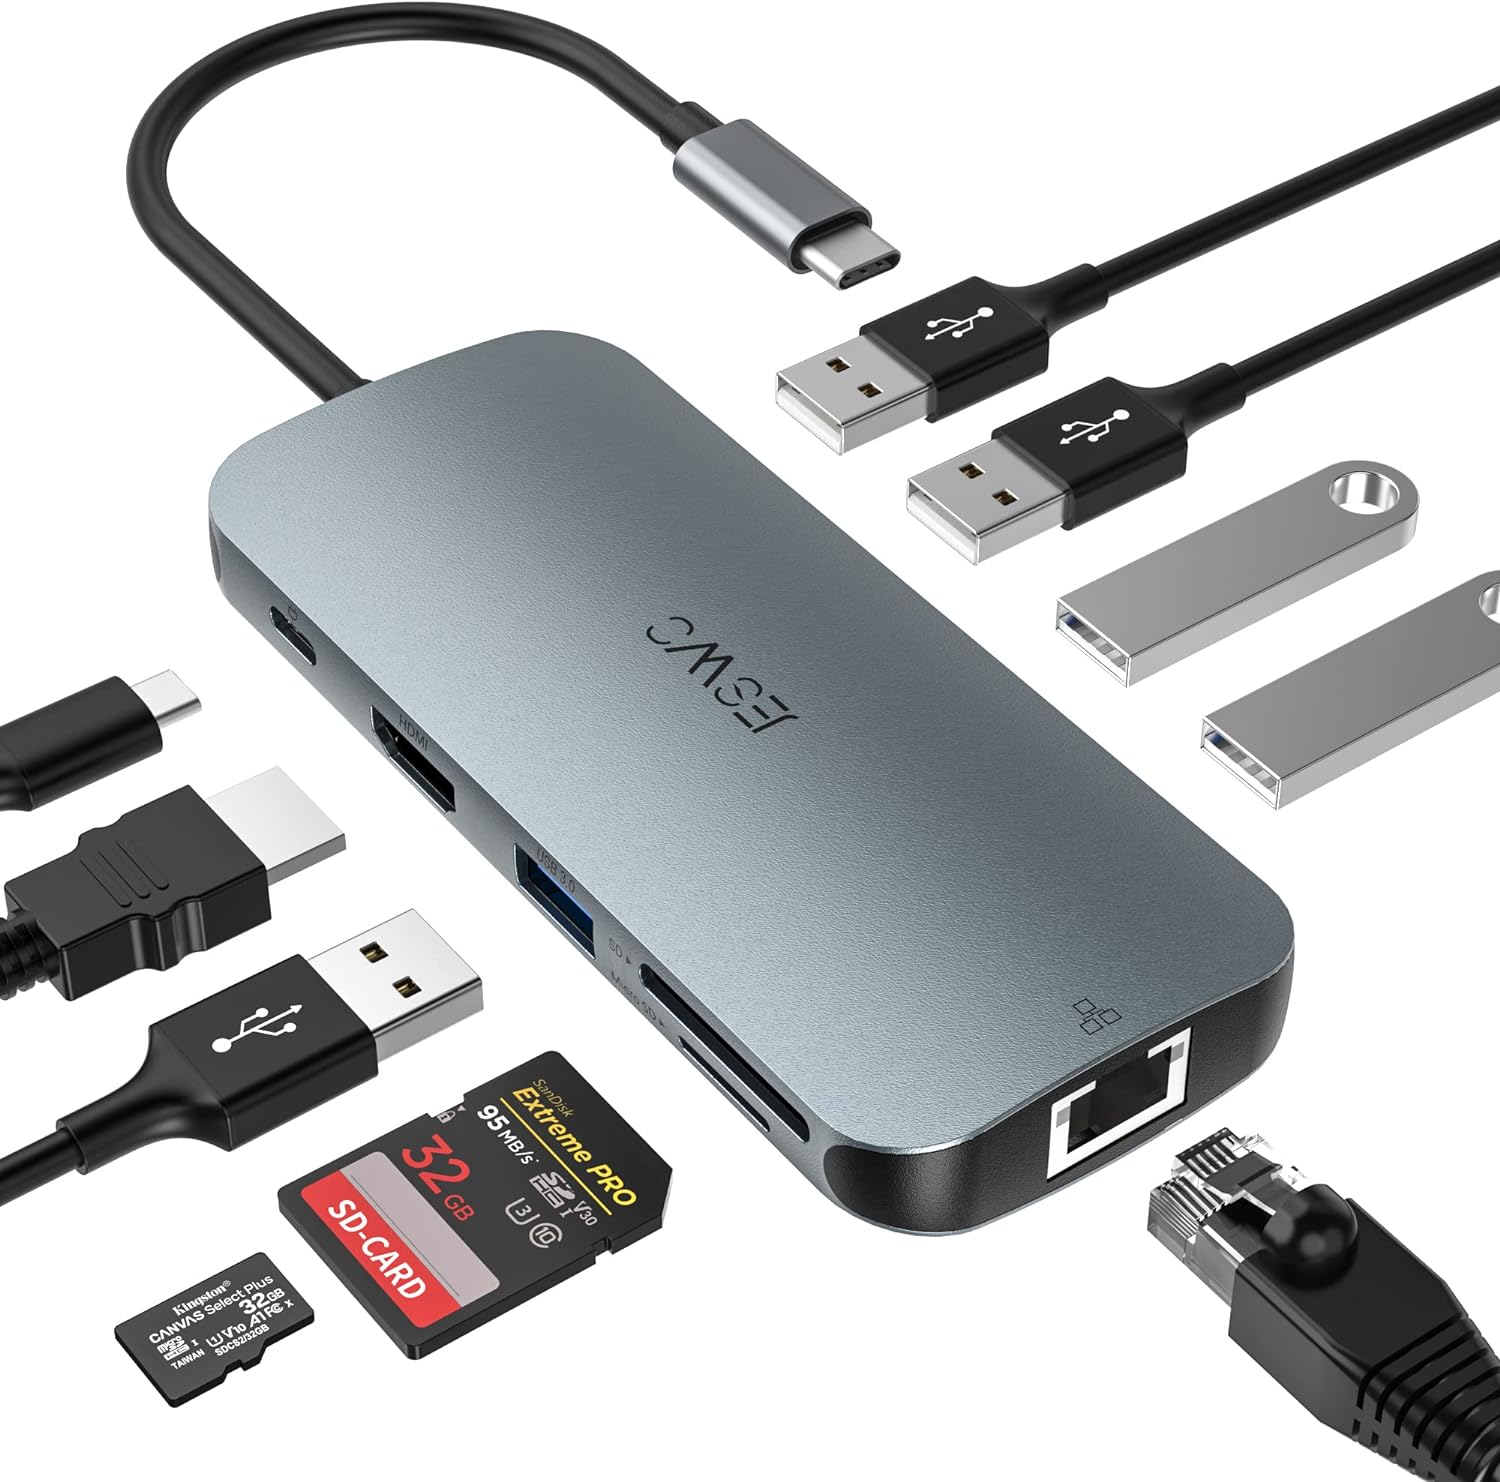 JESWO USB C Hub, 10 en 1 Adaptador Multipuerto USB C con HDMI 4K, 3*USB 3.0, 2*USB 2.0, USB C 100W PD Carga, Ethernet RJ-45 de 1000 W, Lector de Tarjetas SD/TF, Compatible con Macbook Pro/Air, DELL